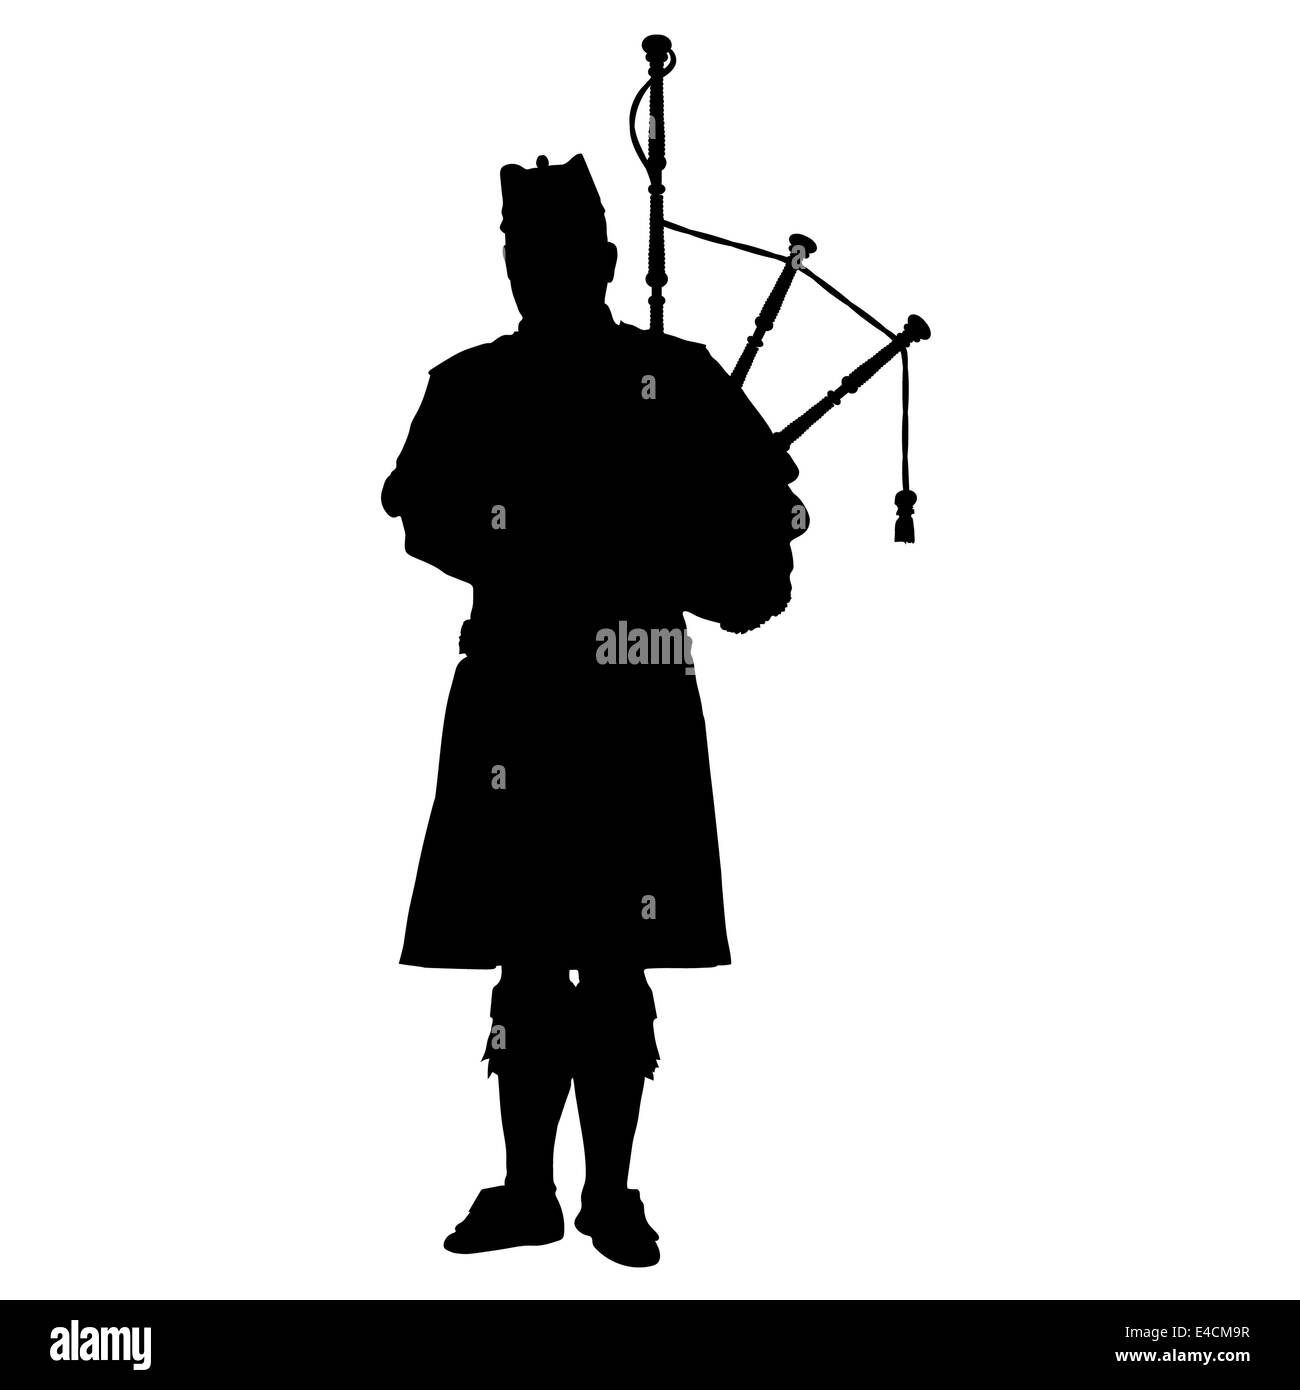 Une silhouette noire d'un cornemuseur écossais jouer de la cornemuse Banque D'Images